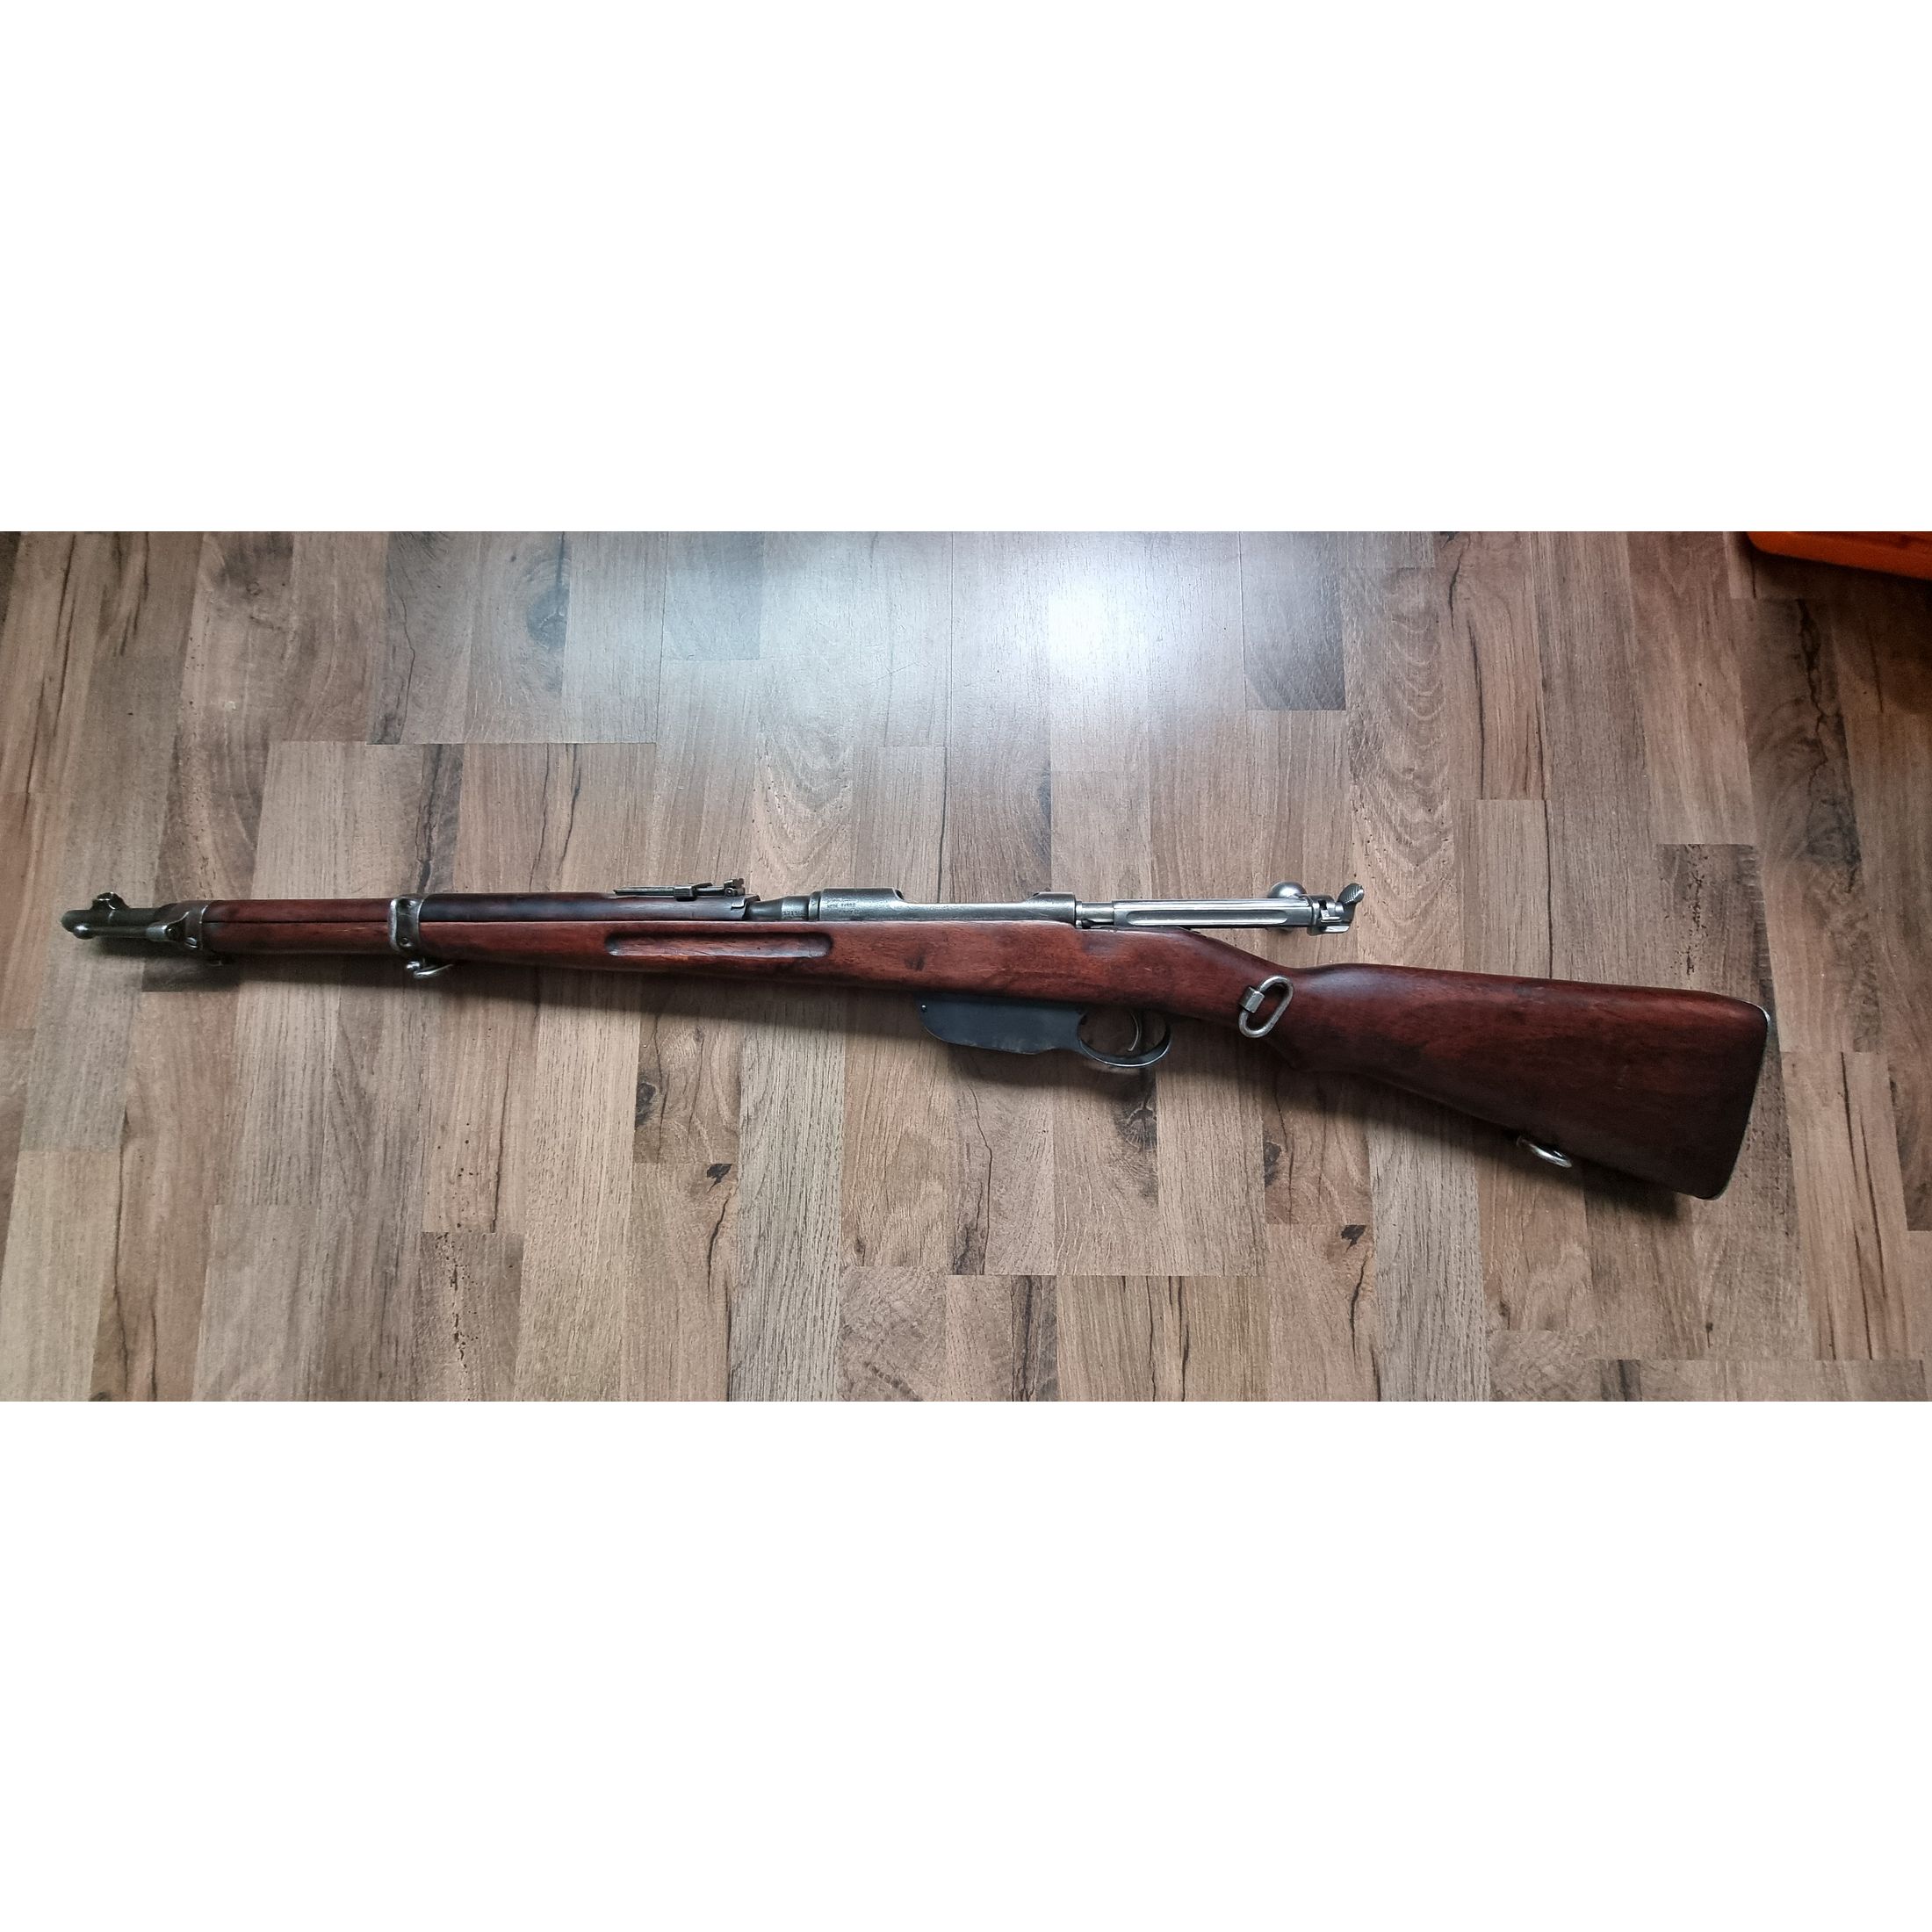 Steyr M95 / 8x50R Mannlicher